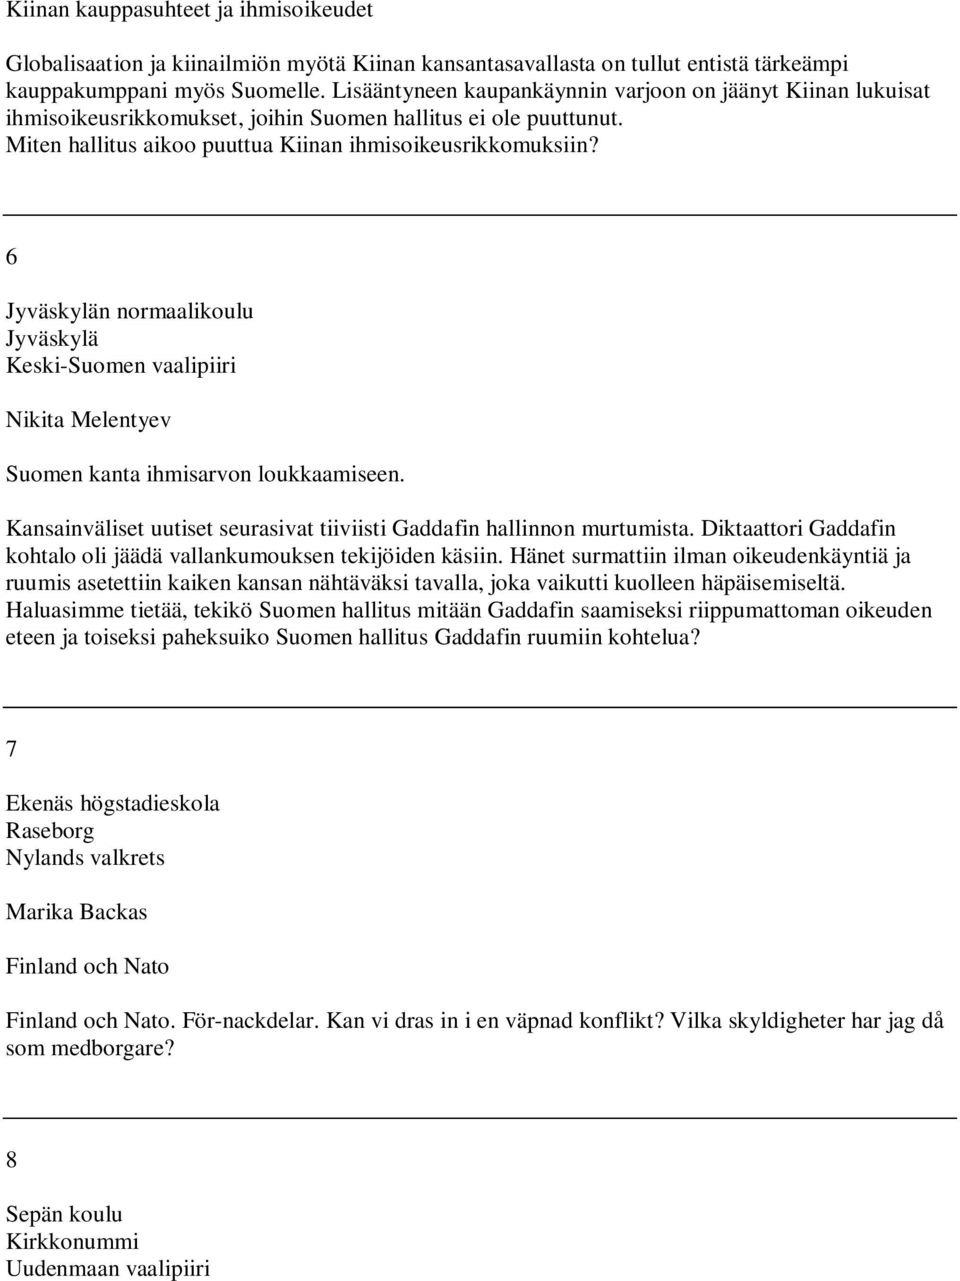 6 Jyväskylän normaalikoulu Jyväskylä Keski-Suomen vaalipiiri Nikita Melentyev Suomen kanta ihmisarvon loukkaamiseen. Kansainväliset uutiset seurasivat tiiviisti Gaddafin hallinnon murtumista.